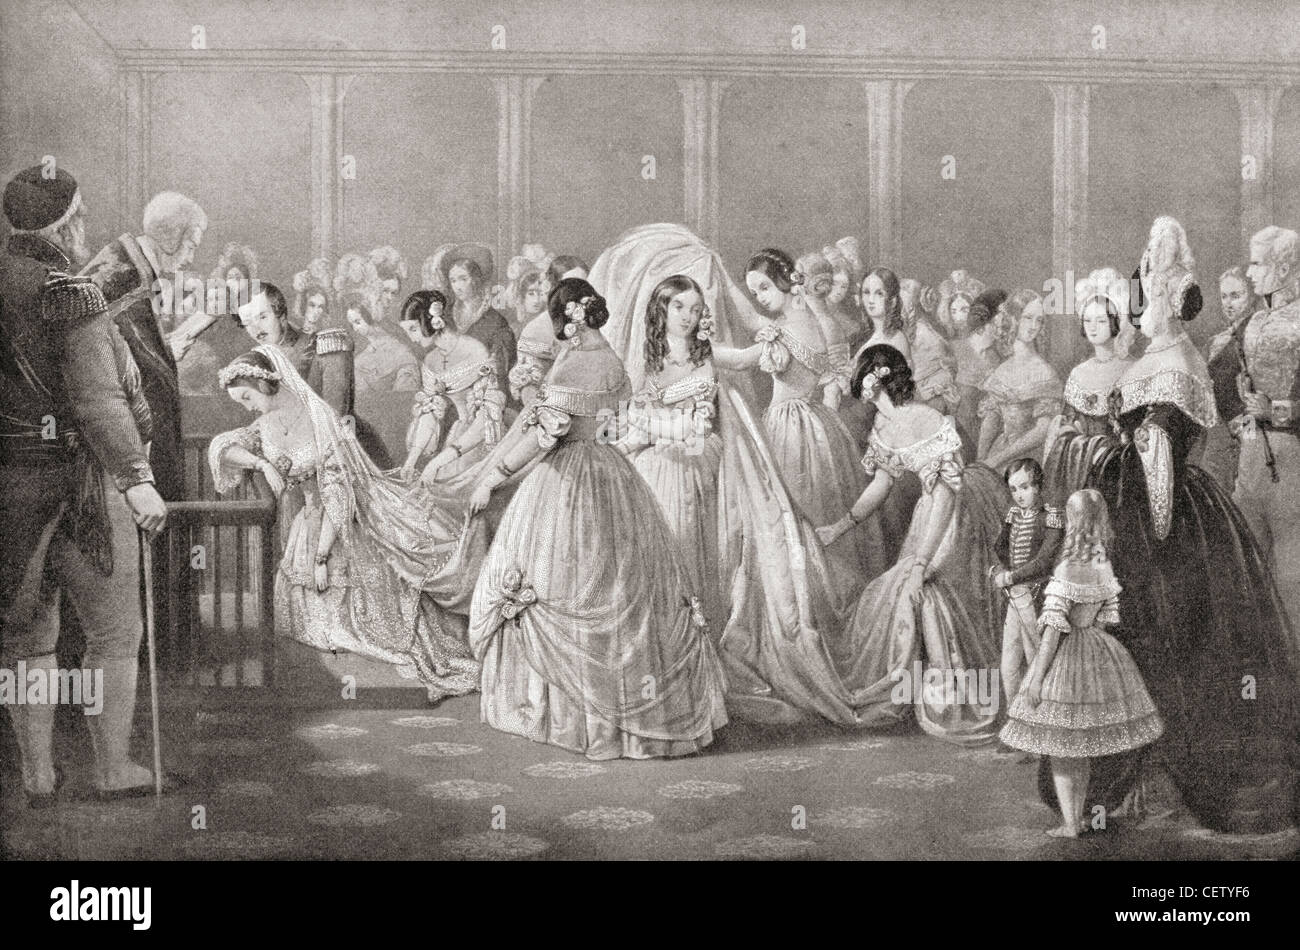 Le mariage de la reine Victoria et le Prince Albert en 1840. Du Strand Magazine publié en 1897. Banque D'Images